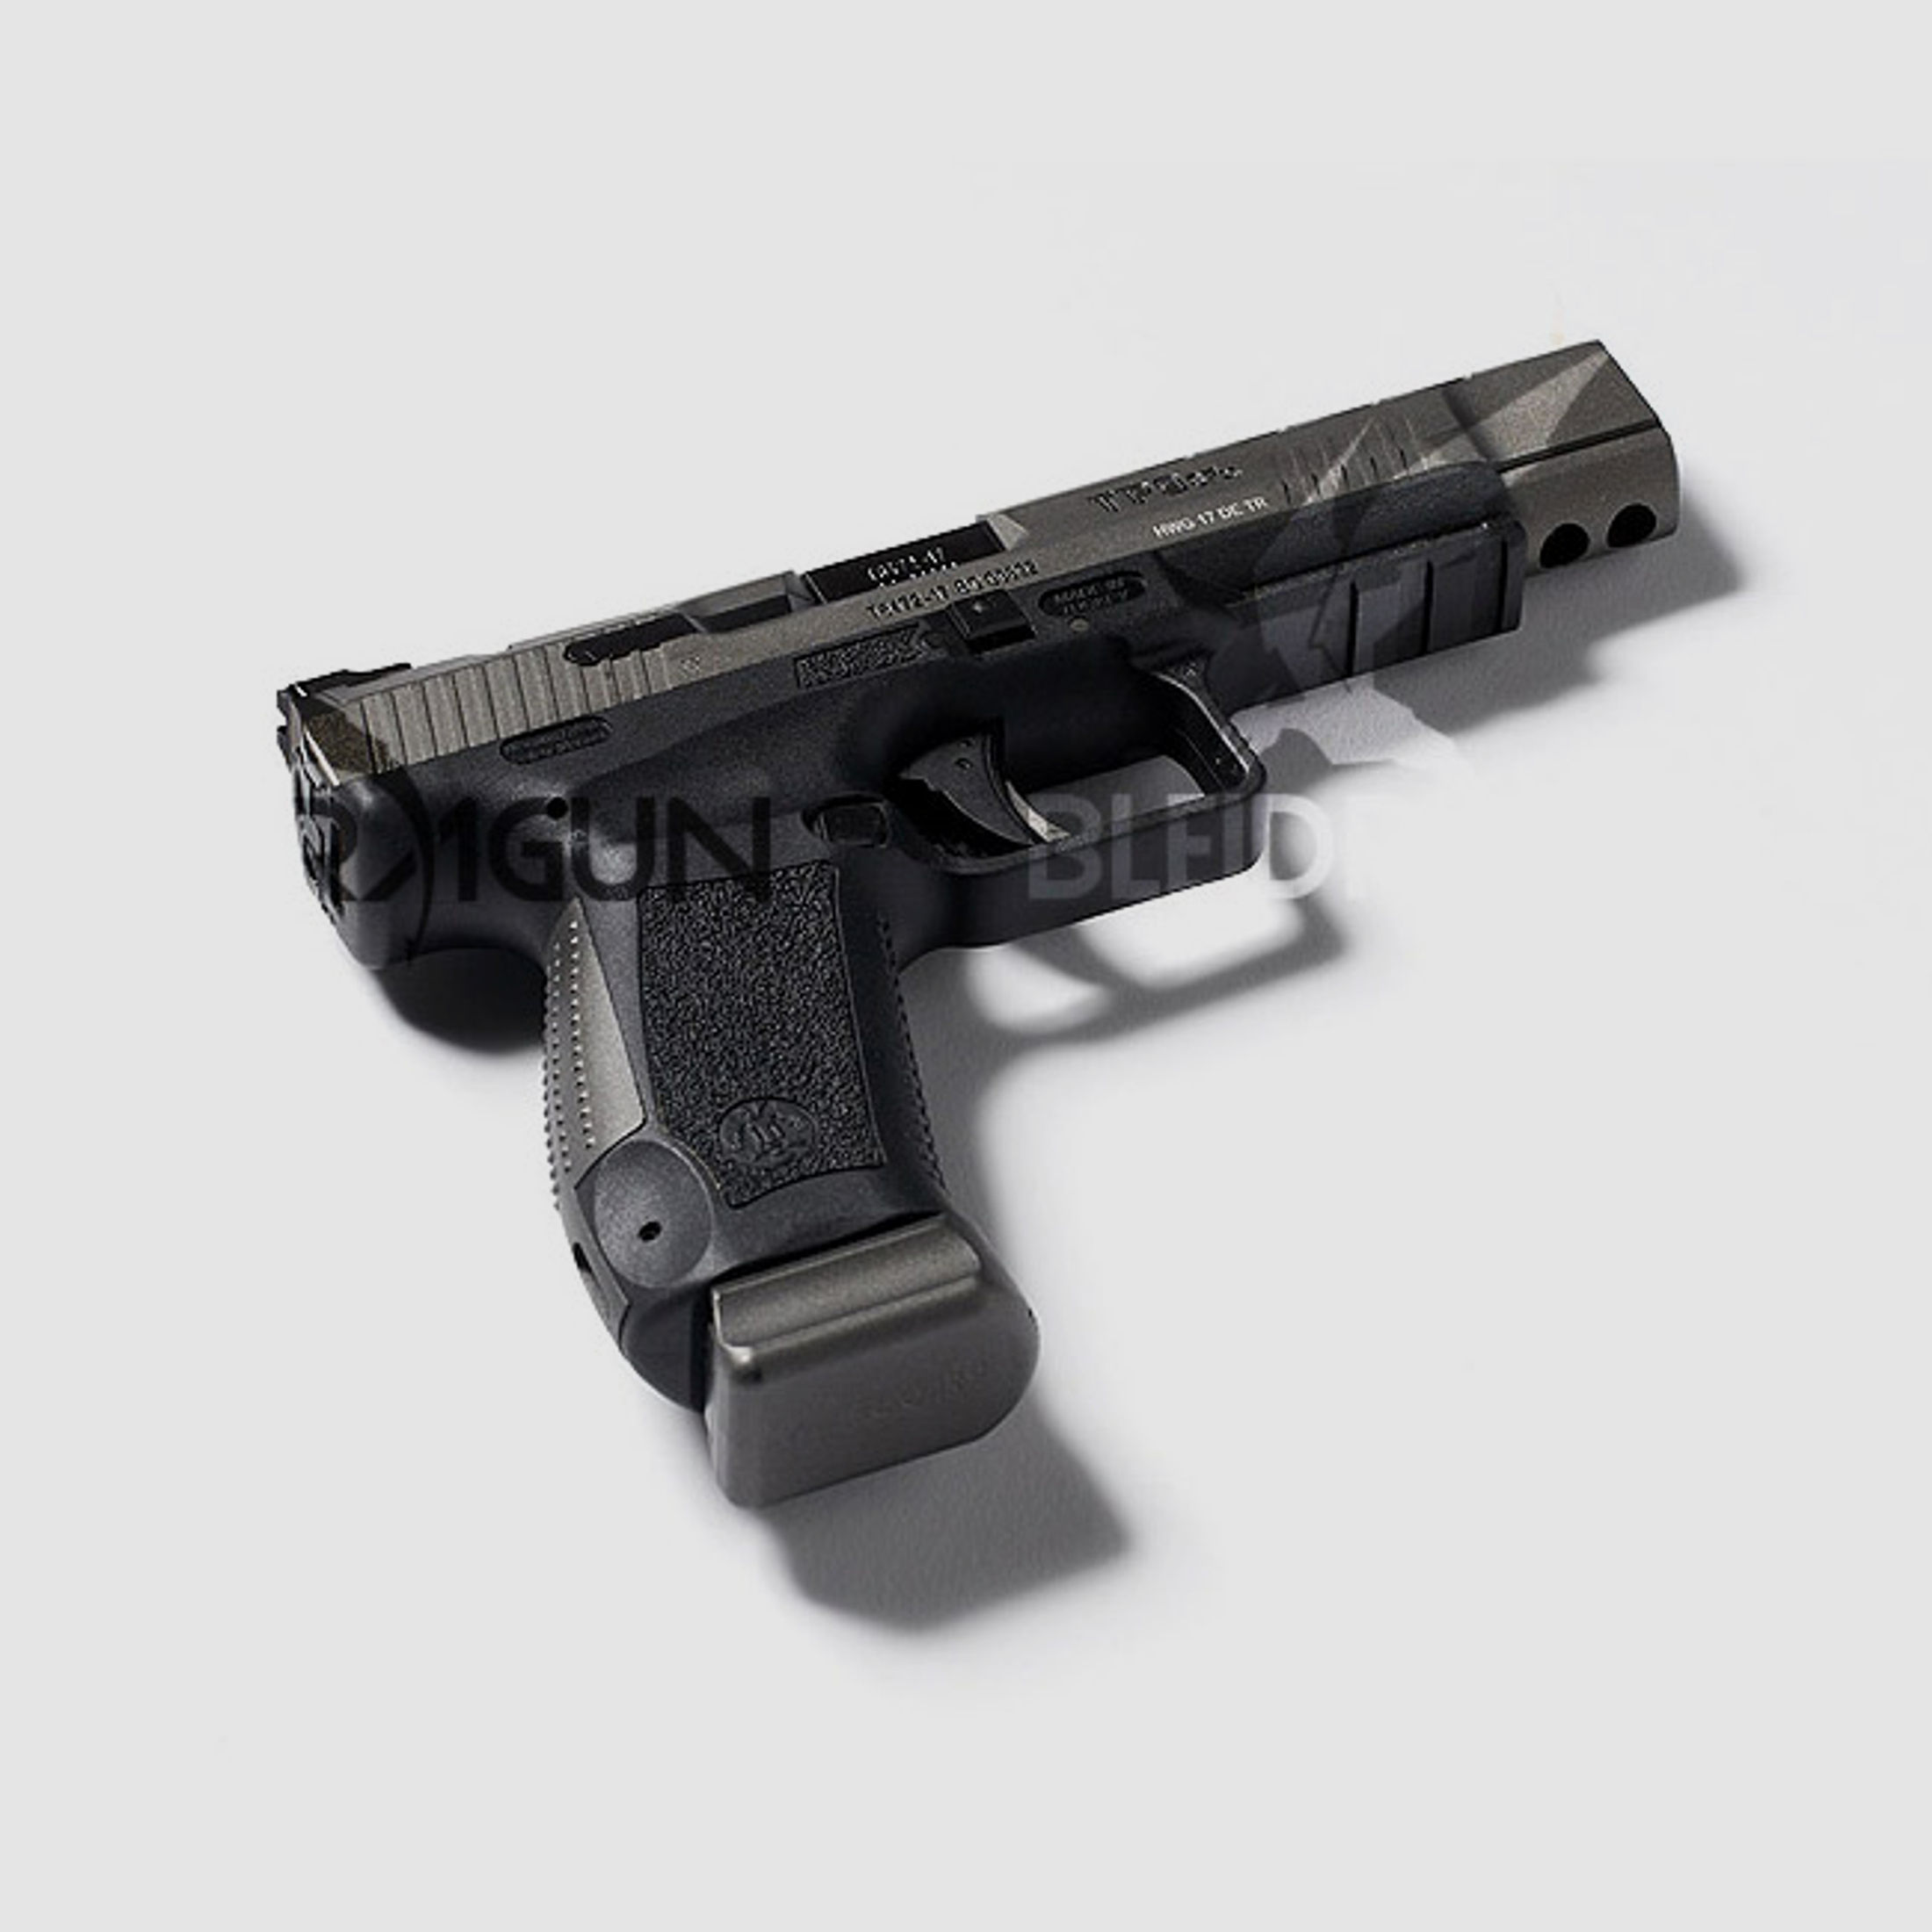 Pistole Canik TP9SFx 9mm x 19